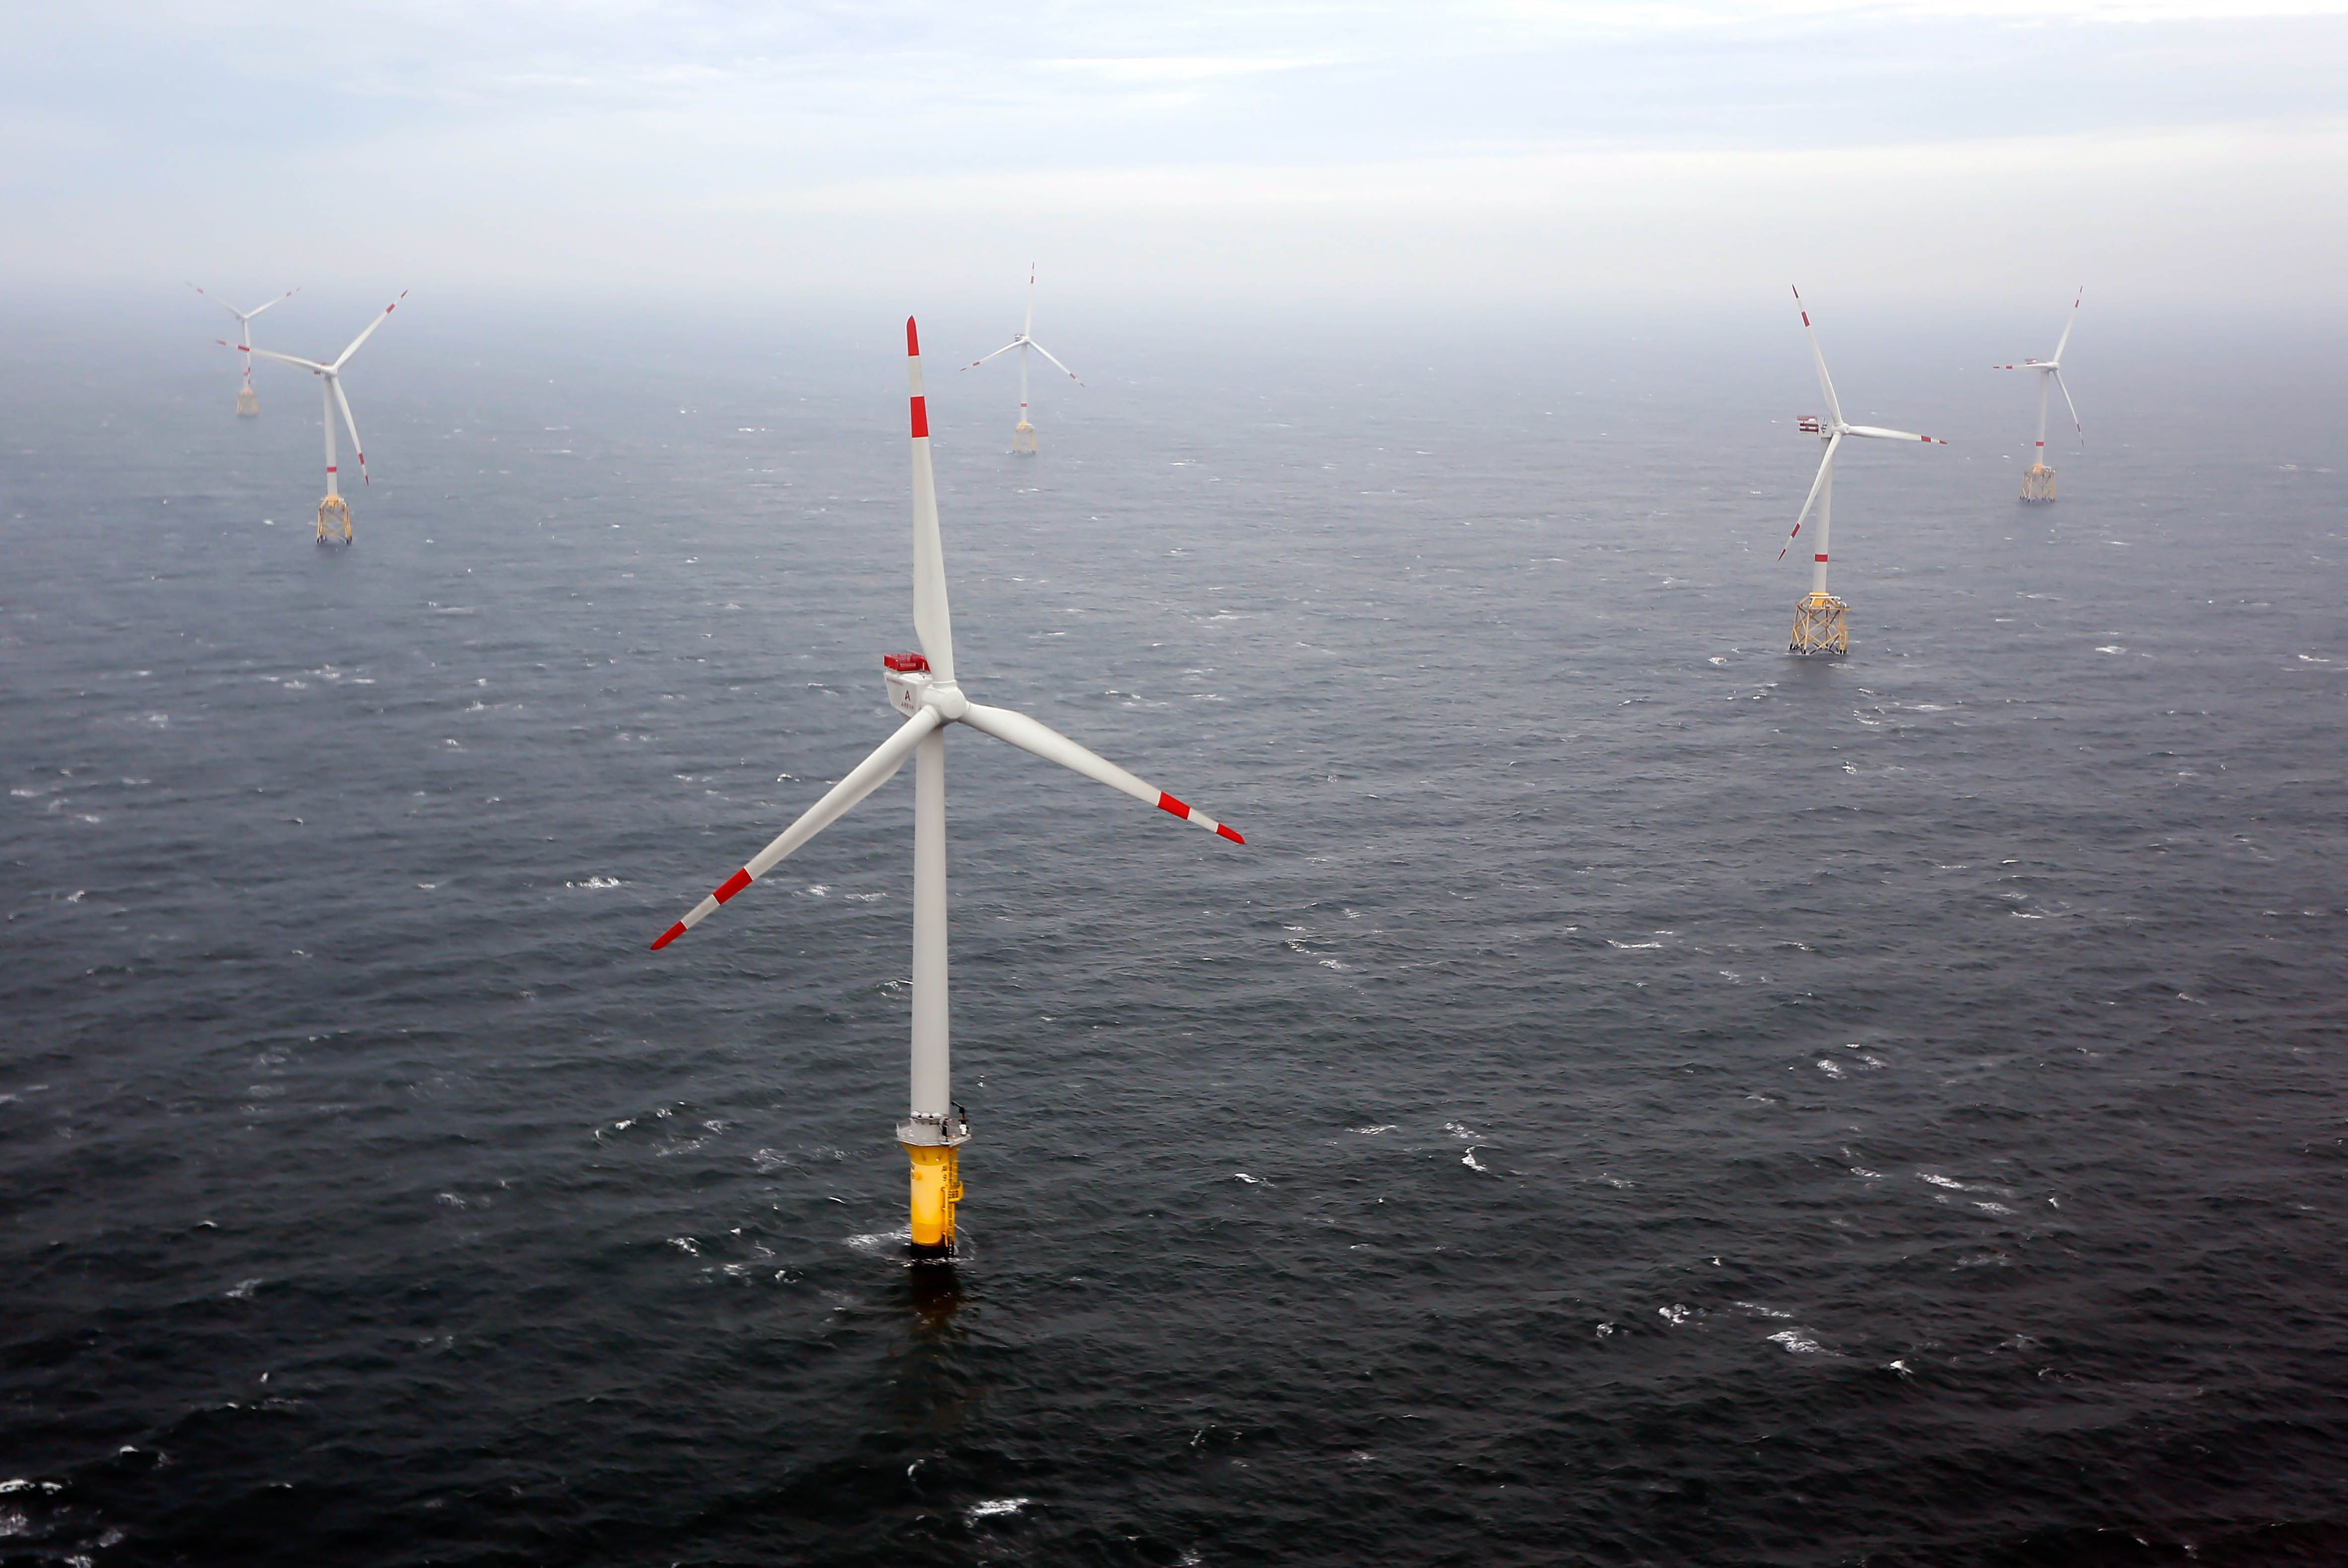 Le projet éolien en mer Sud-Atlantique – son nom officiel – vise à produire, grâce à près de 80 aérogénérateurs, 1gigawatt (GW) d’électricité sur une superficie de 120 km². Illustration LP/Olivier Corsan